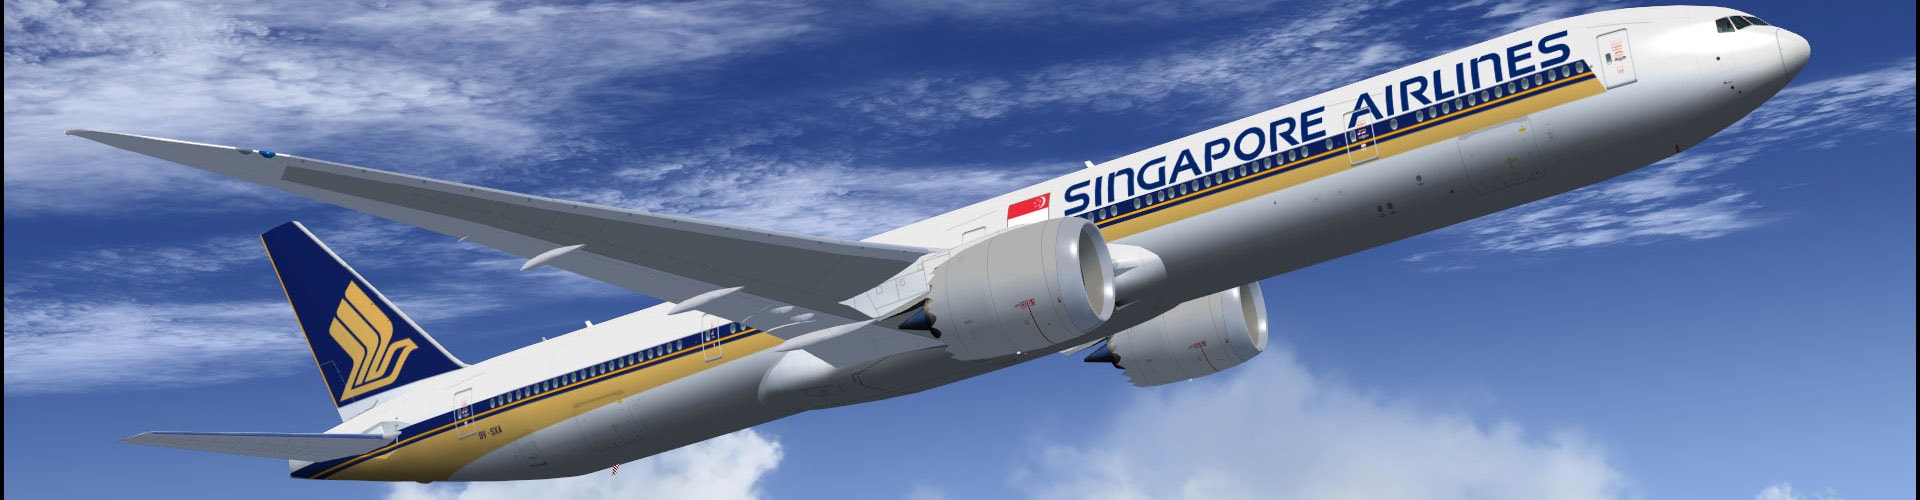 シンガポール航空画像1